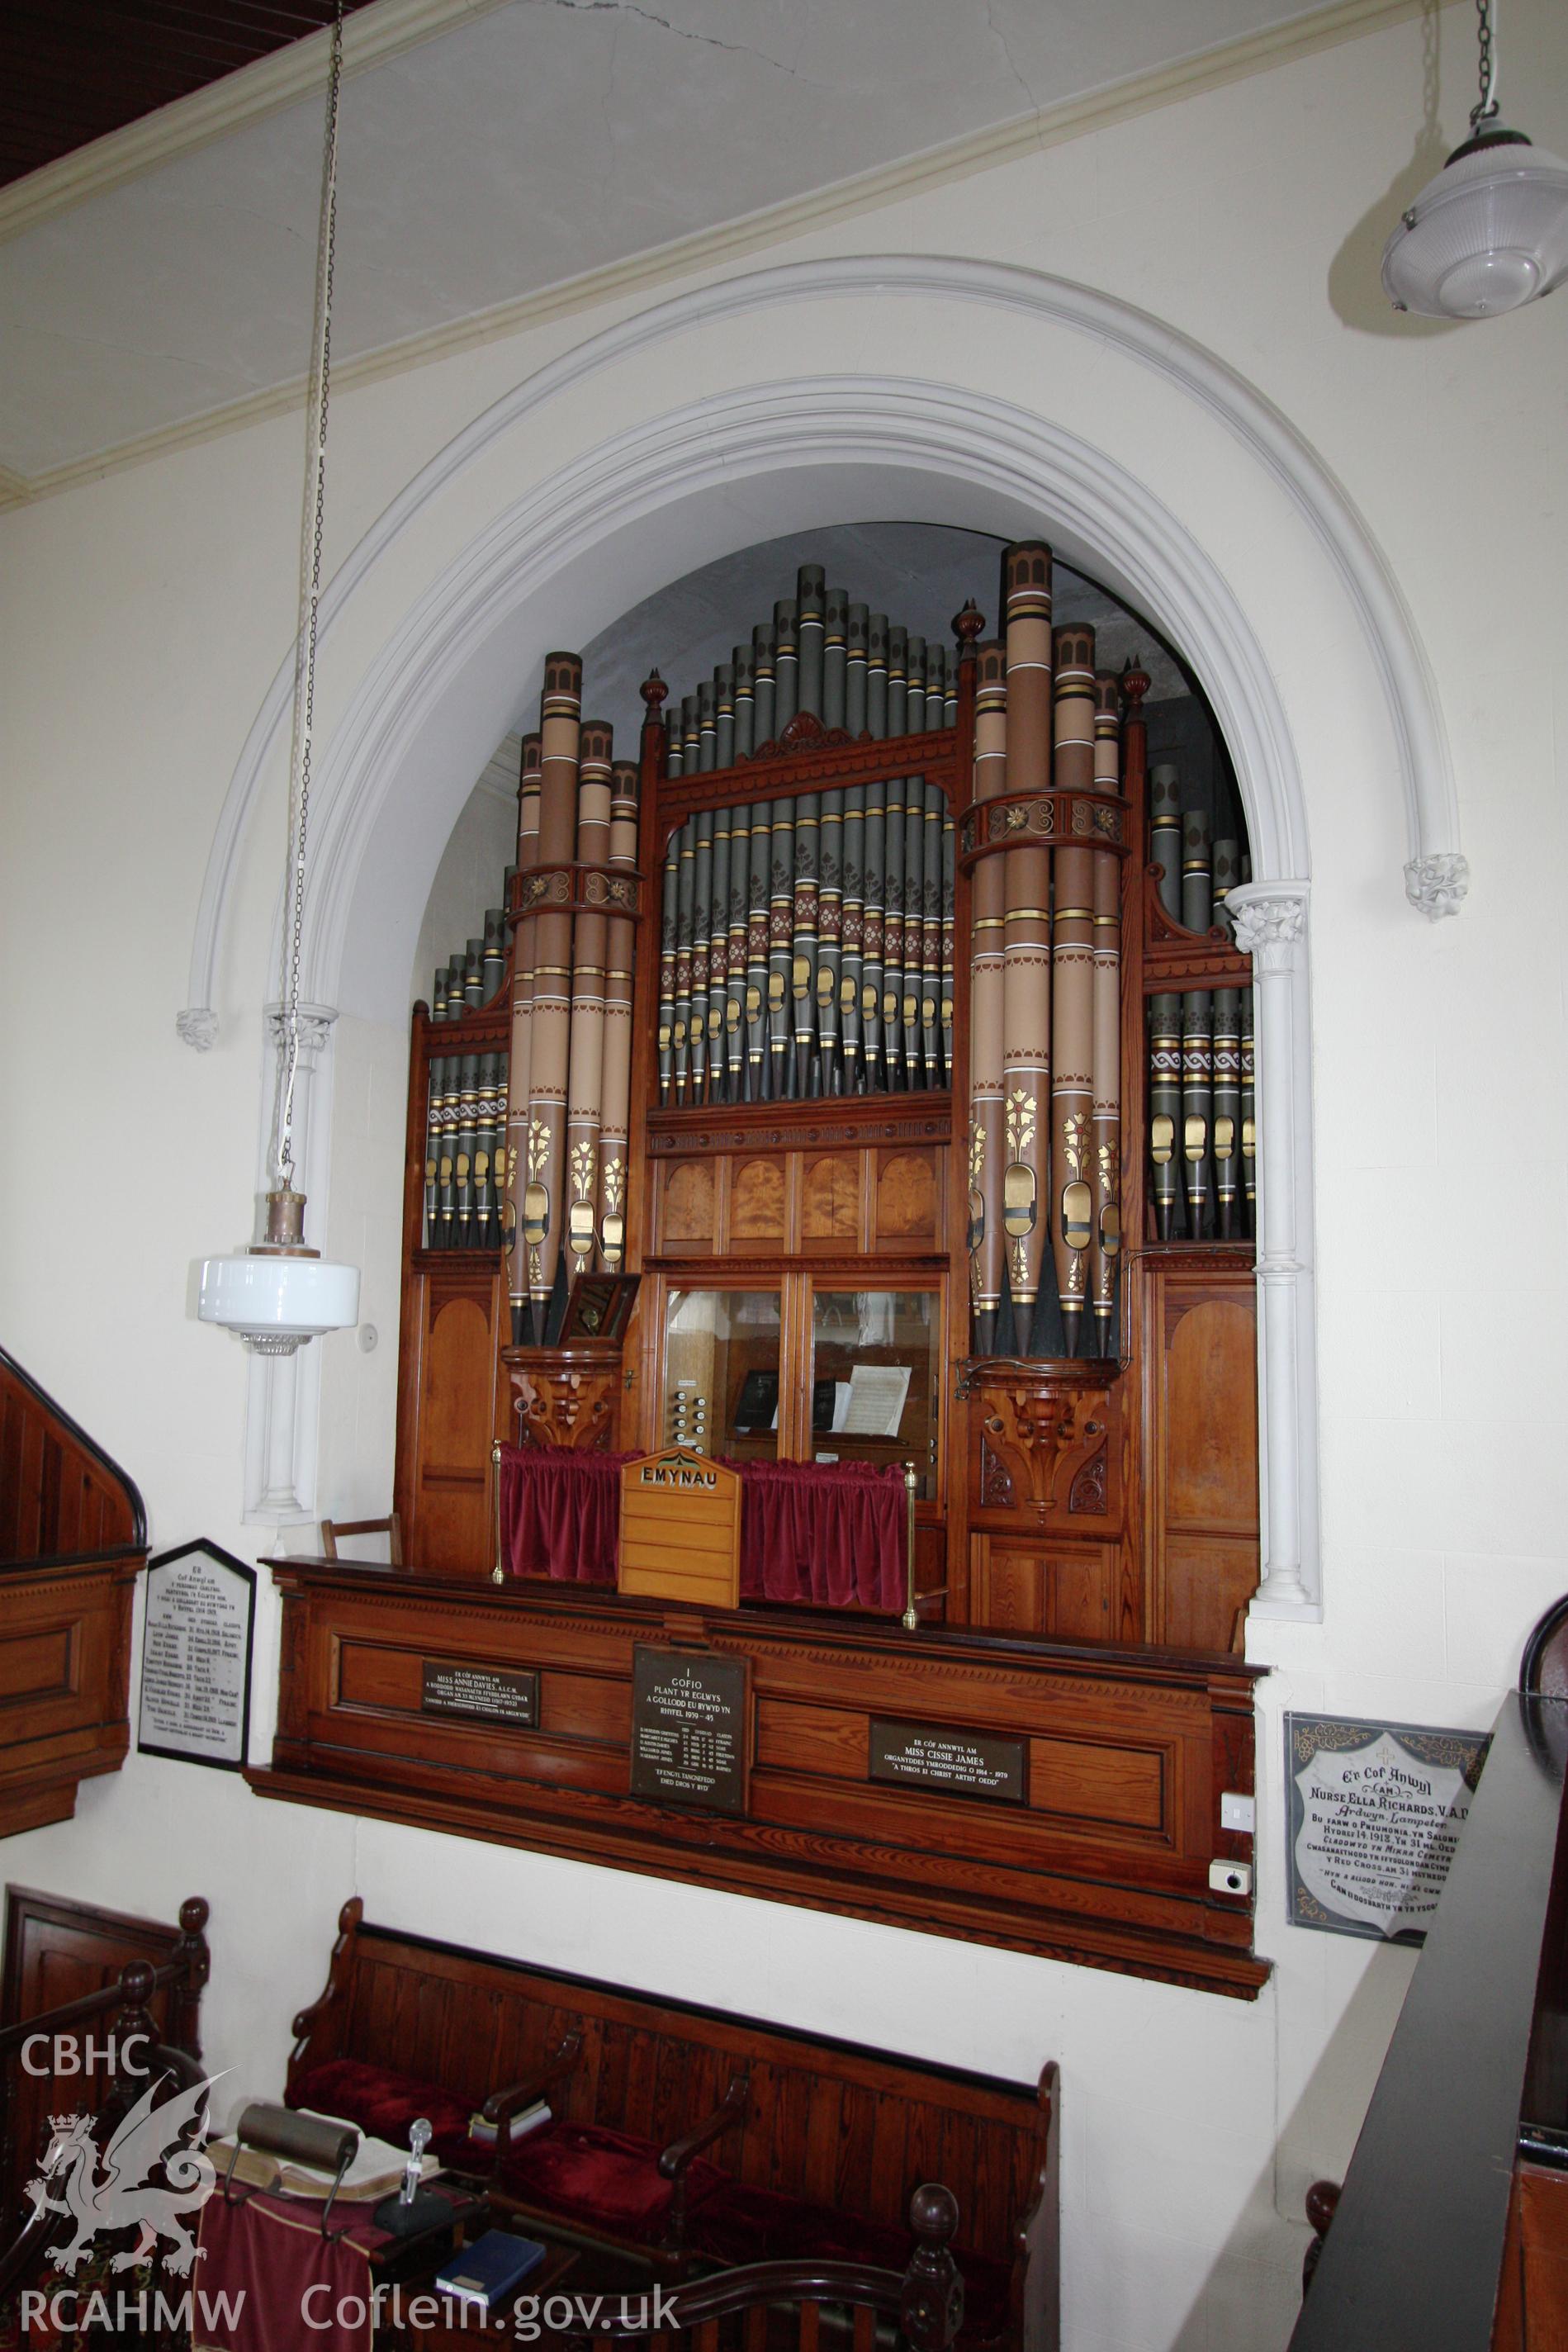 Soar chapel, detail of organ.